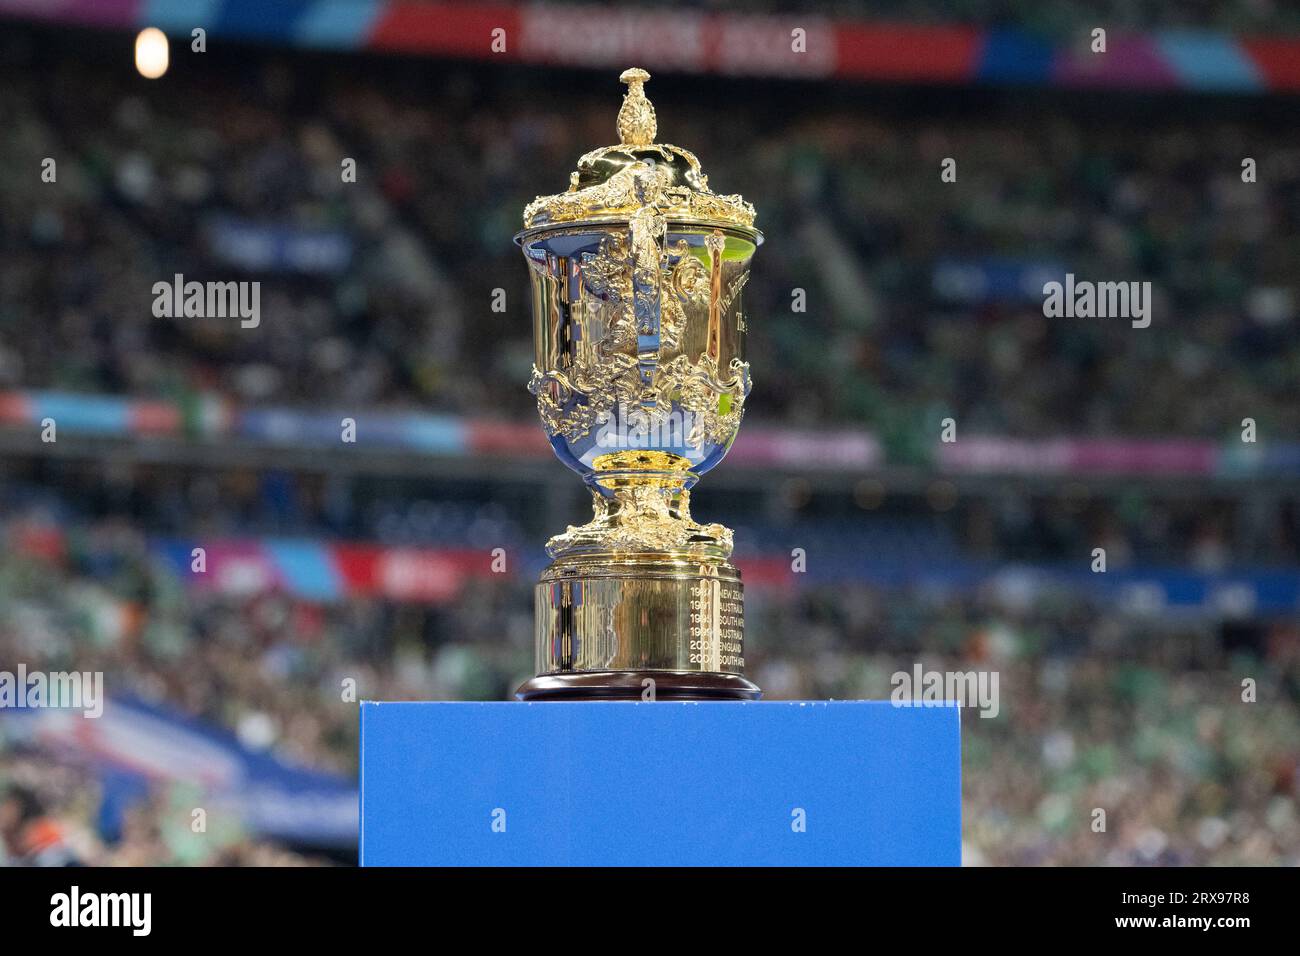 William Webb Ellis Trophy prima della Coppa del mondo di rugby, Francia. , . A Parigi, in Francia. Foto di David Niviere/ABACAPRESS.COM credito: Abaca Press/Alamy Live News Foto Stock